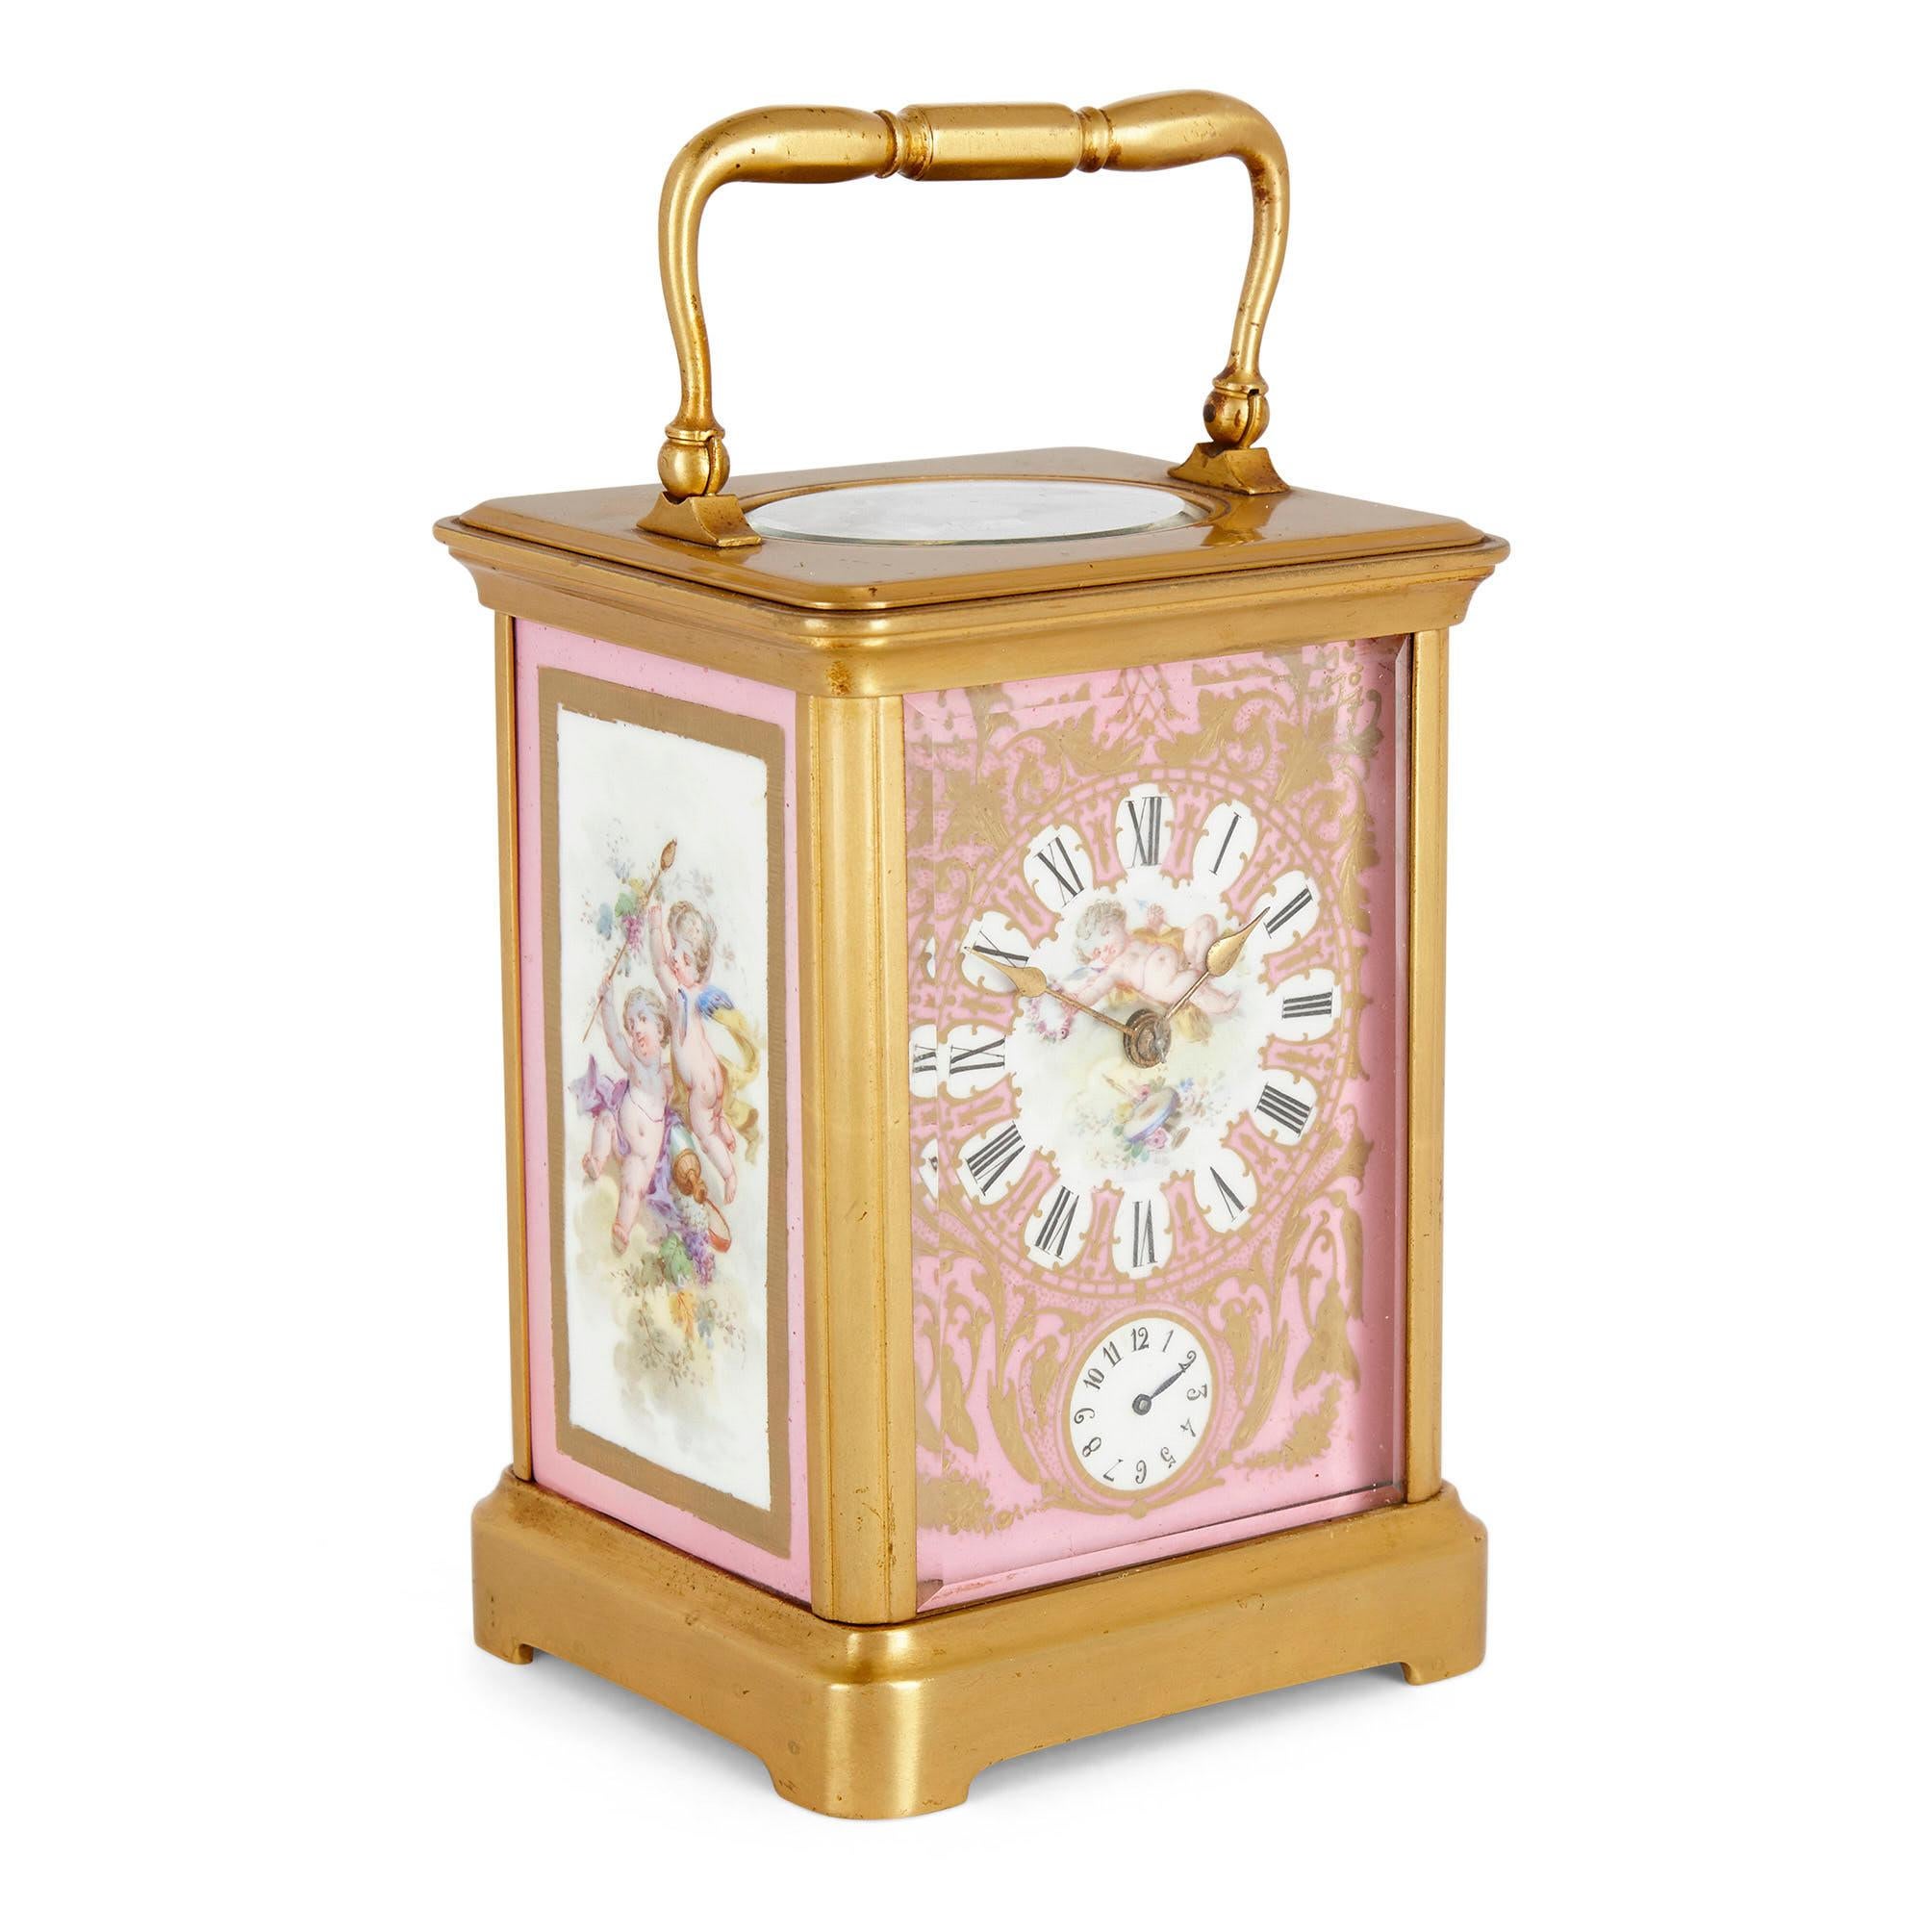 Rokoko-Stil Sèvres Stil Porzellan und Ormolu Kutsche Uhr
Französisch, Ende 19. Jahrhundert
Abmessungen: Höhe 18cm, Breite 10cm, Tiefe 8,5cm

Die Kutschenuhr hat eine rechteckige Form und ist mit einem rechteckigen Ormolu-Gehäuse ausgestattet, das